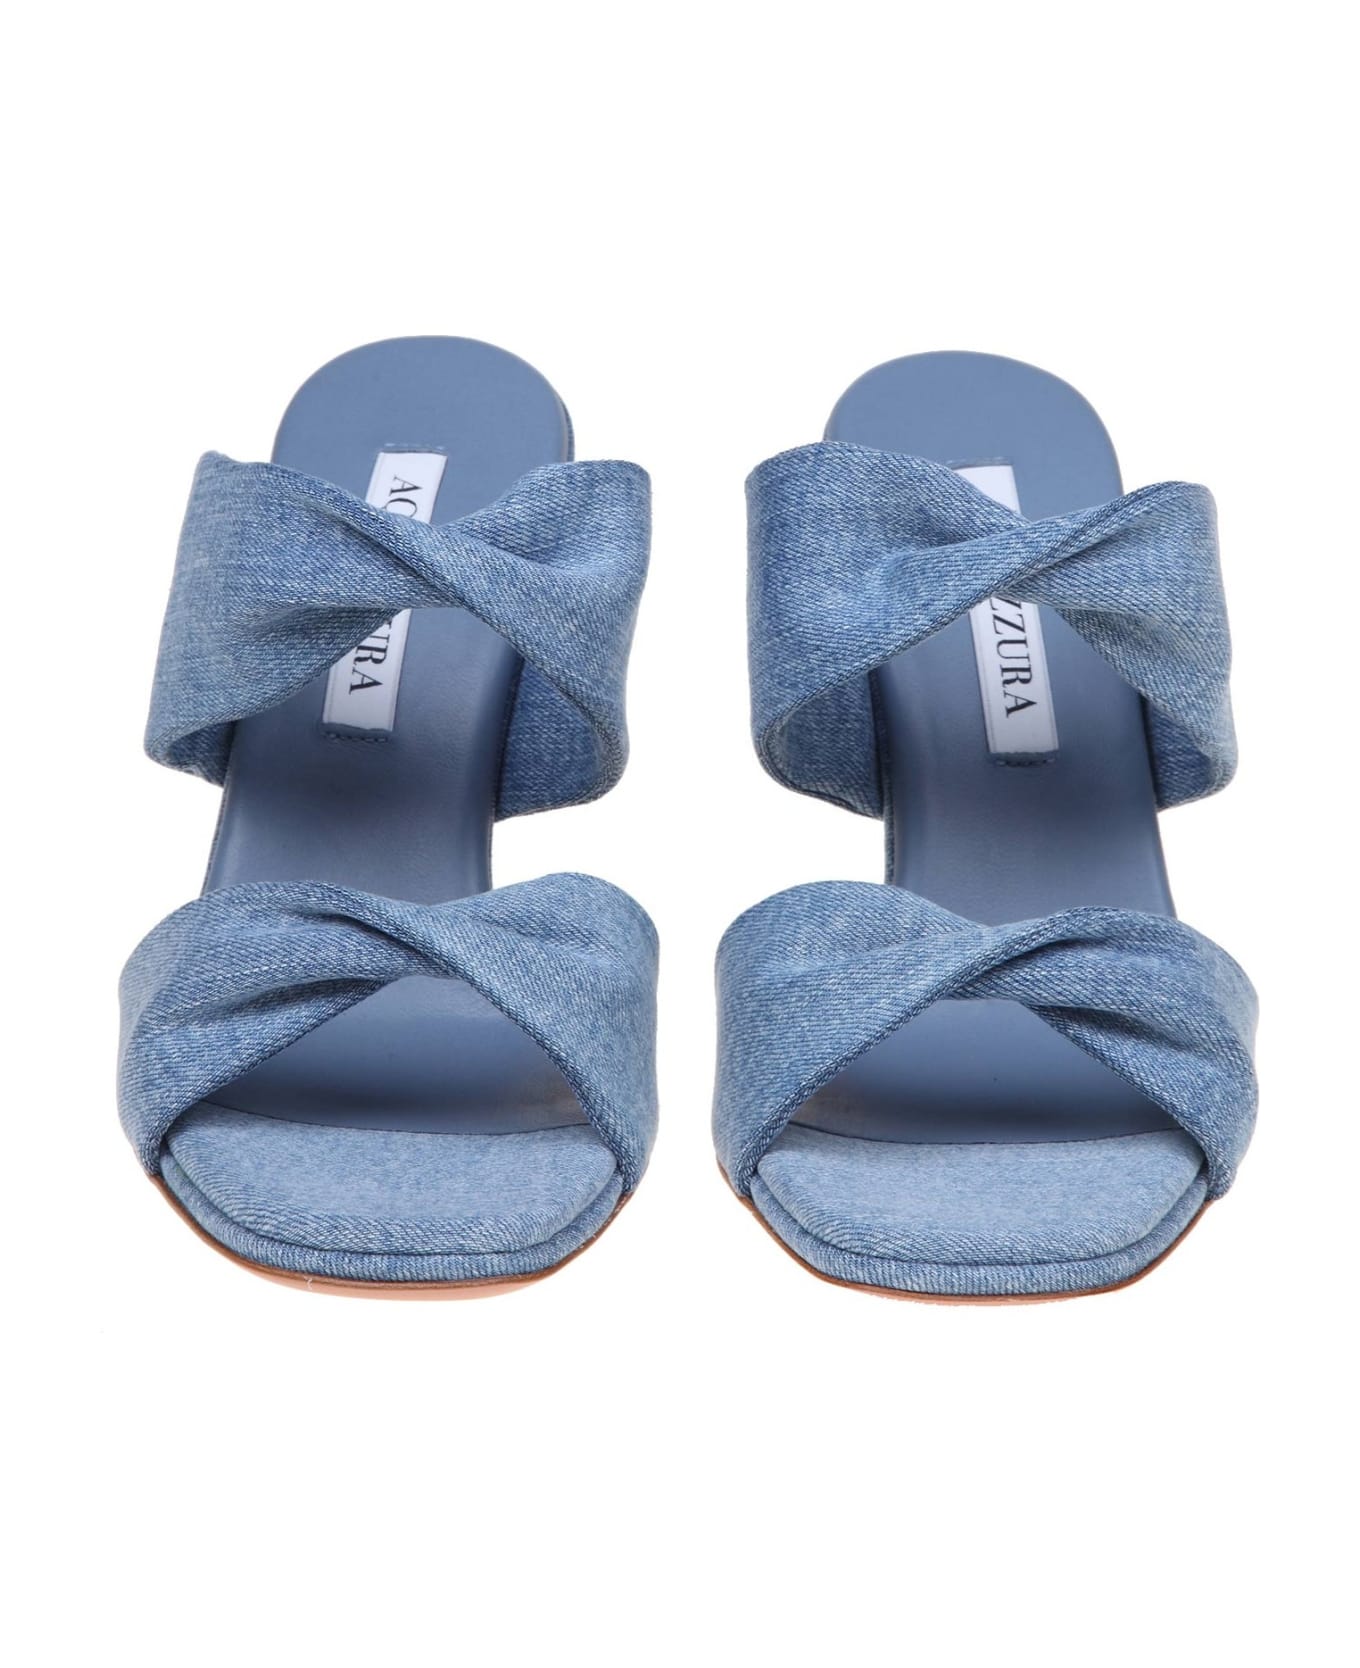 Aquazzura Twist 95 Sandal In Denim Fabric - Light blue